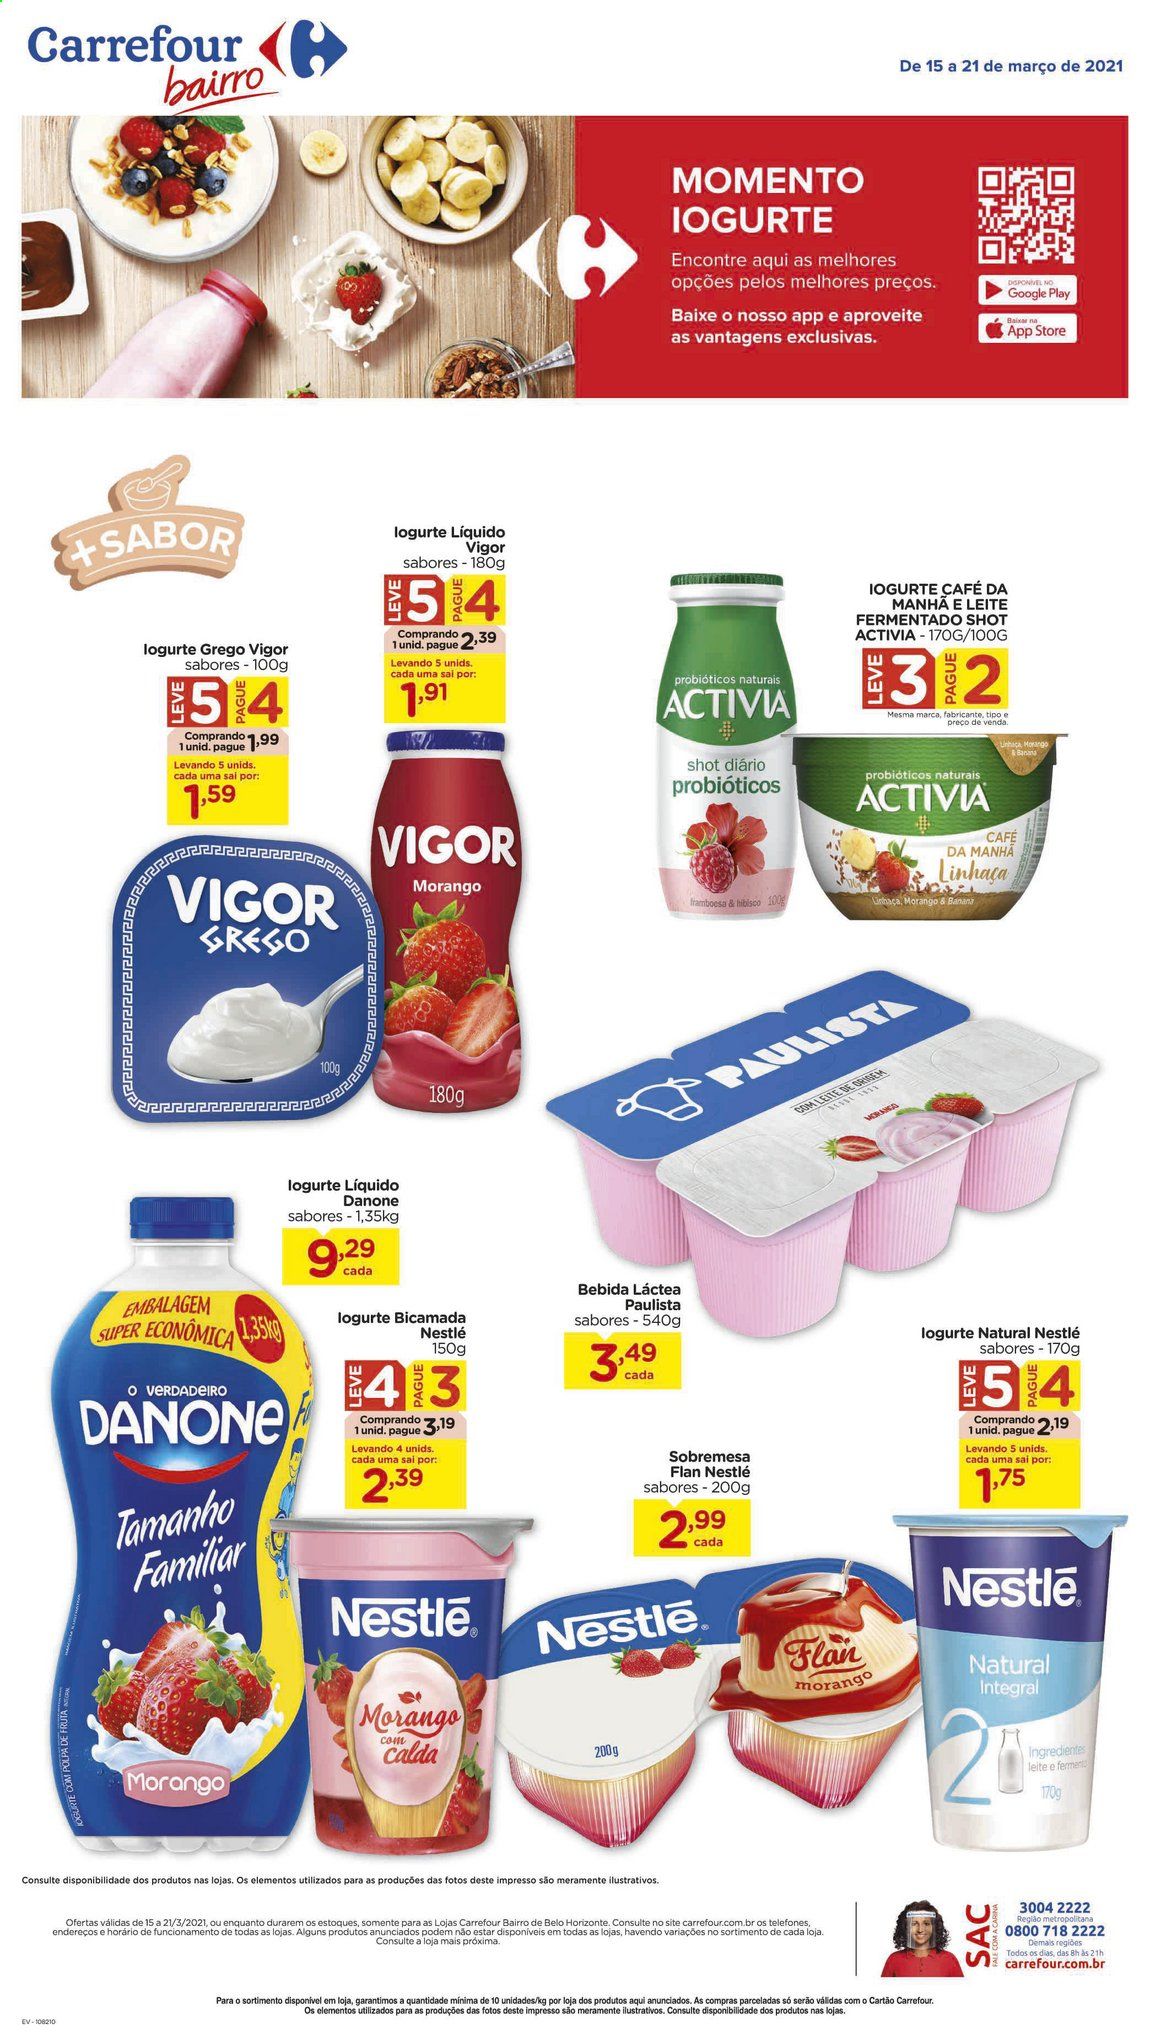 thumbnail - Folheto Carrefour Bairro - 15/03/2021 - 21/03/2021 - Produtos em promoção - framboesa, sobremesa, iogurte, Activia, Danone, bebida lactea, leite fermentado, Nestlé, Vigor. Página 1.